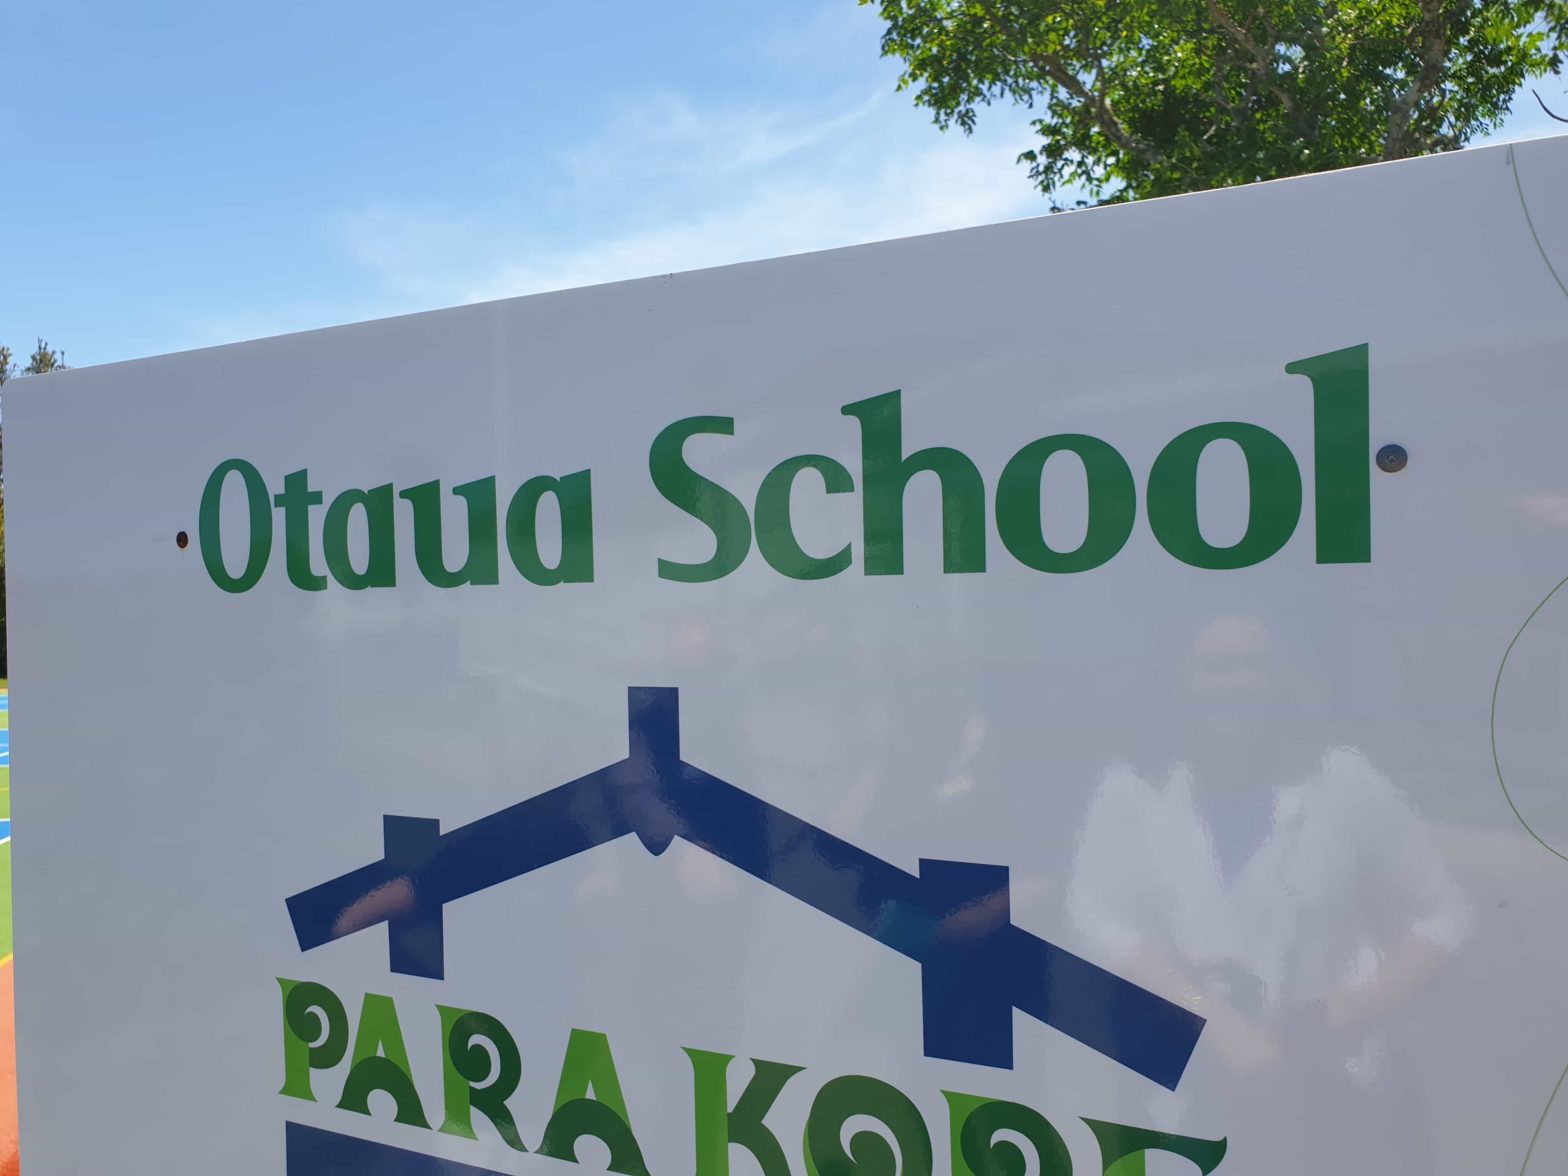 Otaua School